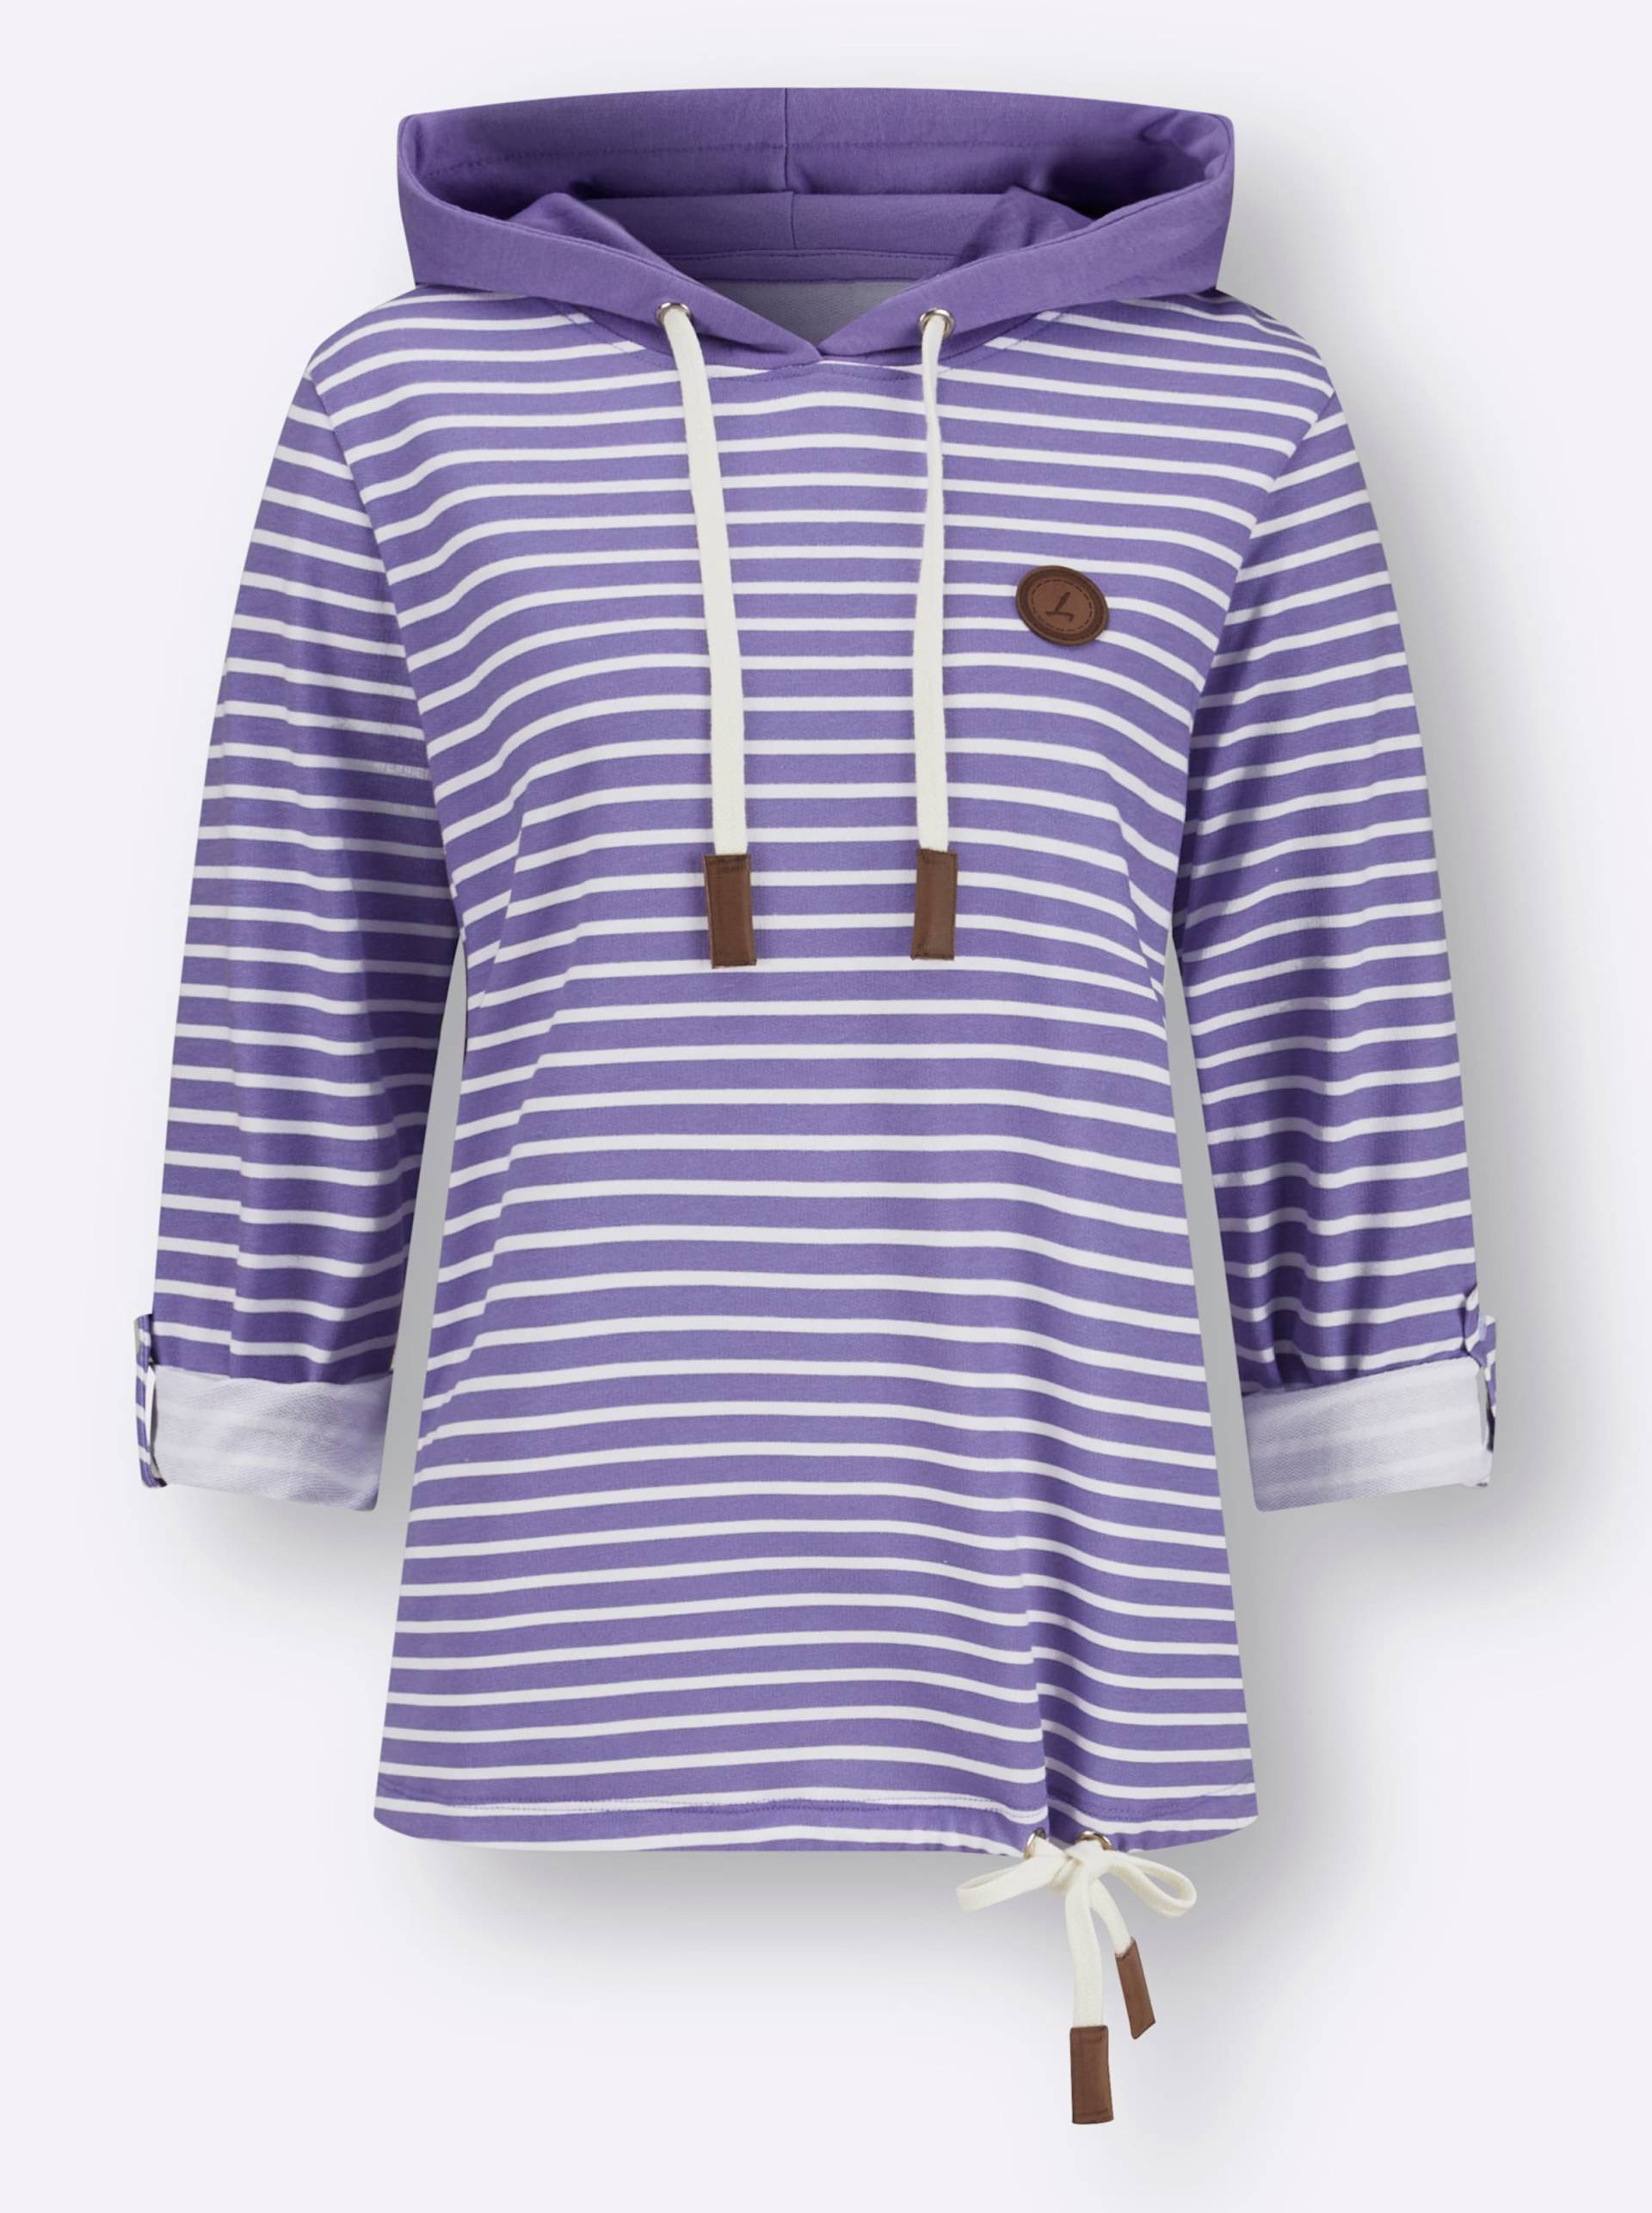 Sweatshirt in lavendel-ecru-geringelt von heine